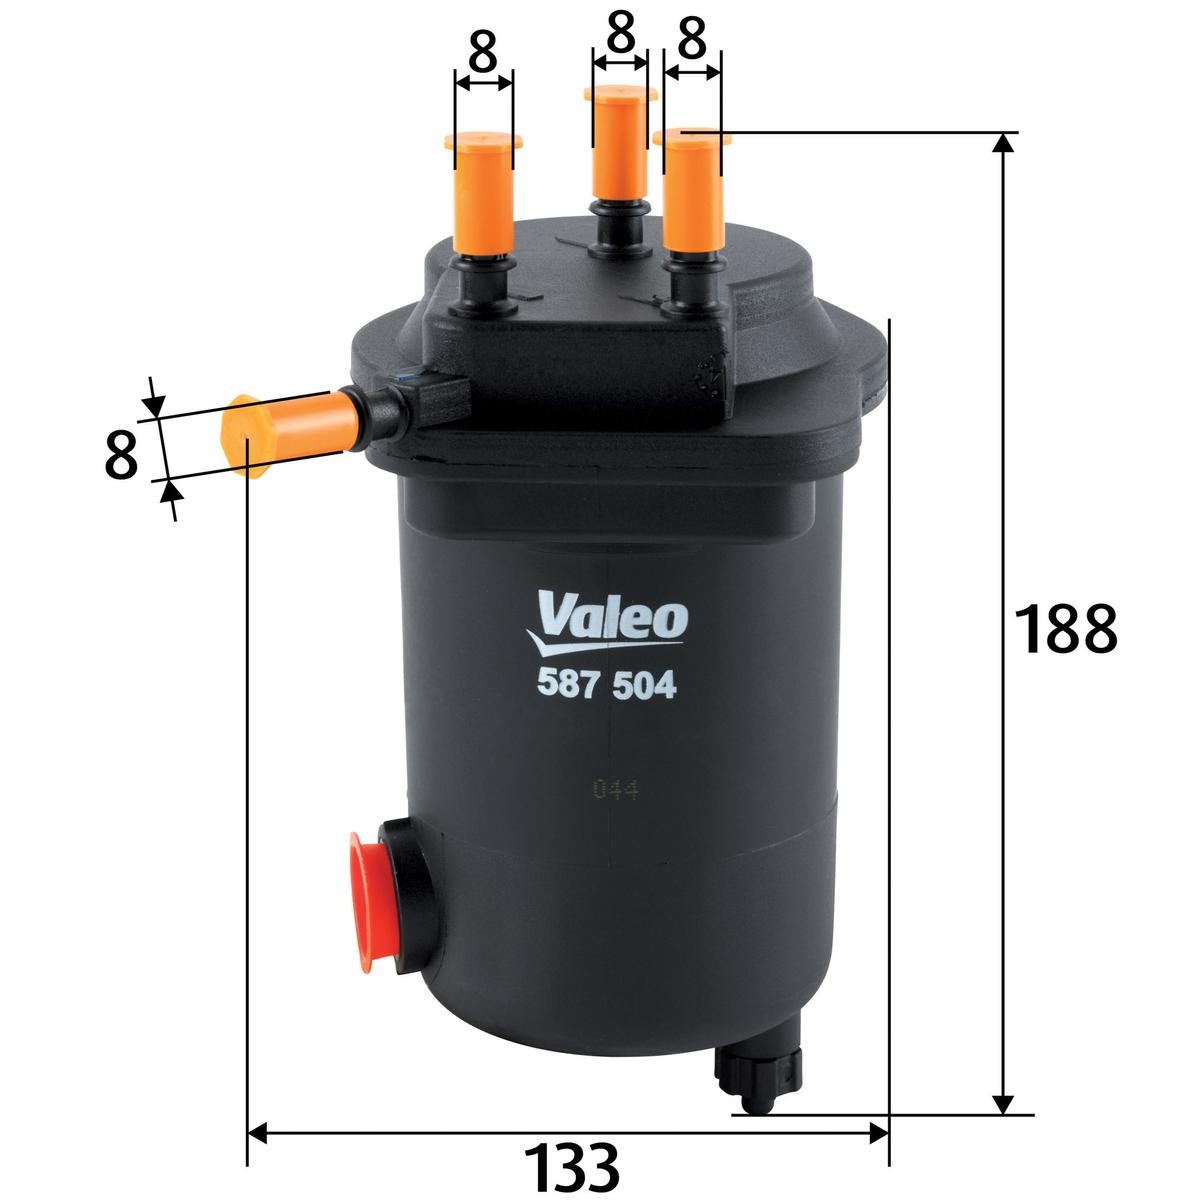 587504 VALEO Filtro carburante Filtro per condotti/circuiti, con attacco  per sensore acqua, 8mm, 8mm 587504 ❱❱❱ prezzo e esperienza